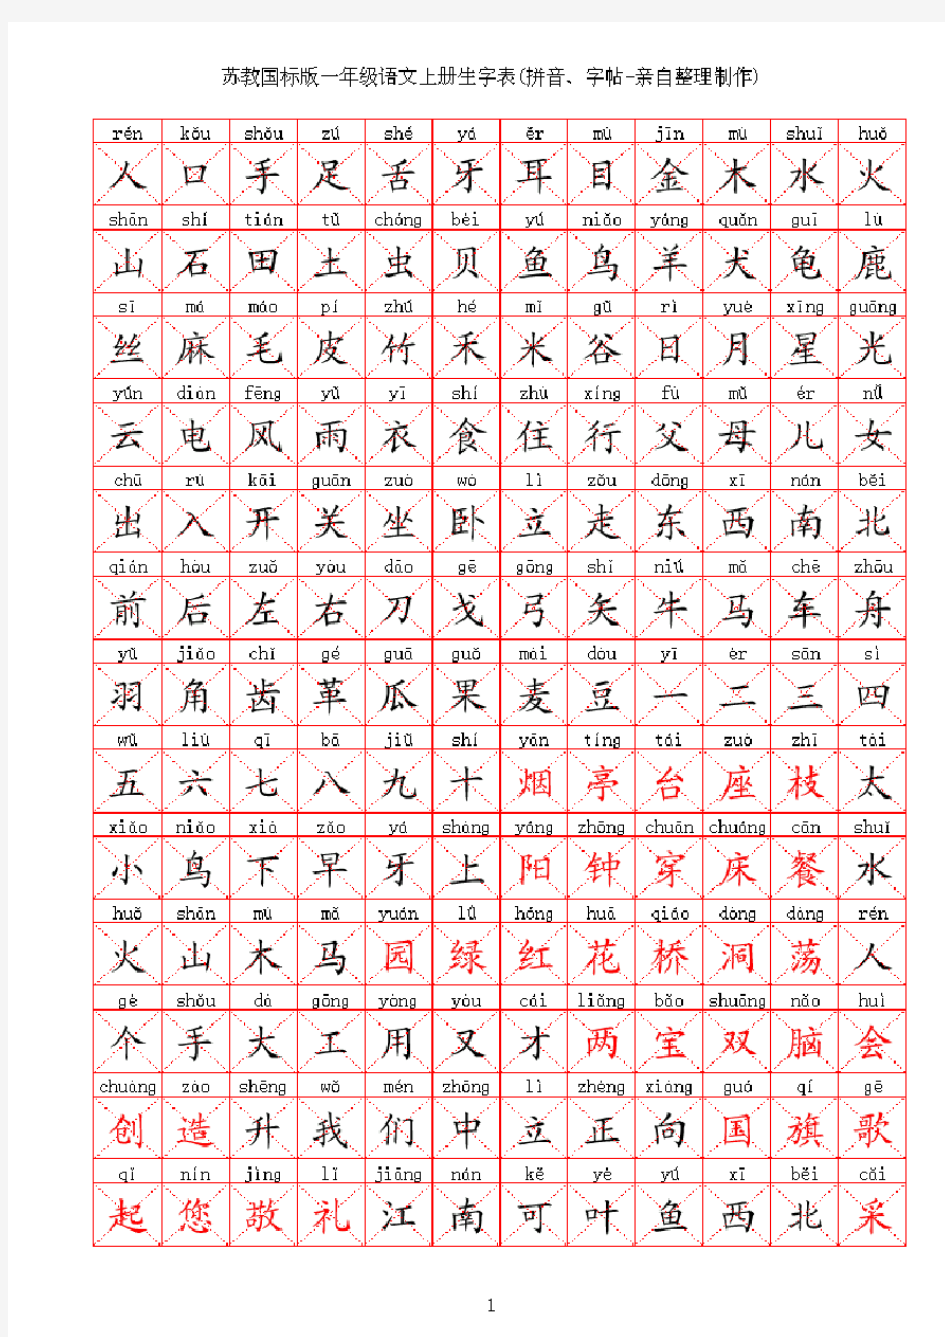 苏教版小学语文一年级生字表上下册拼音字帖亲自整理制作